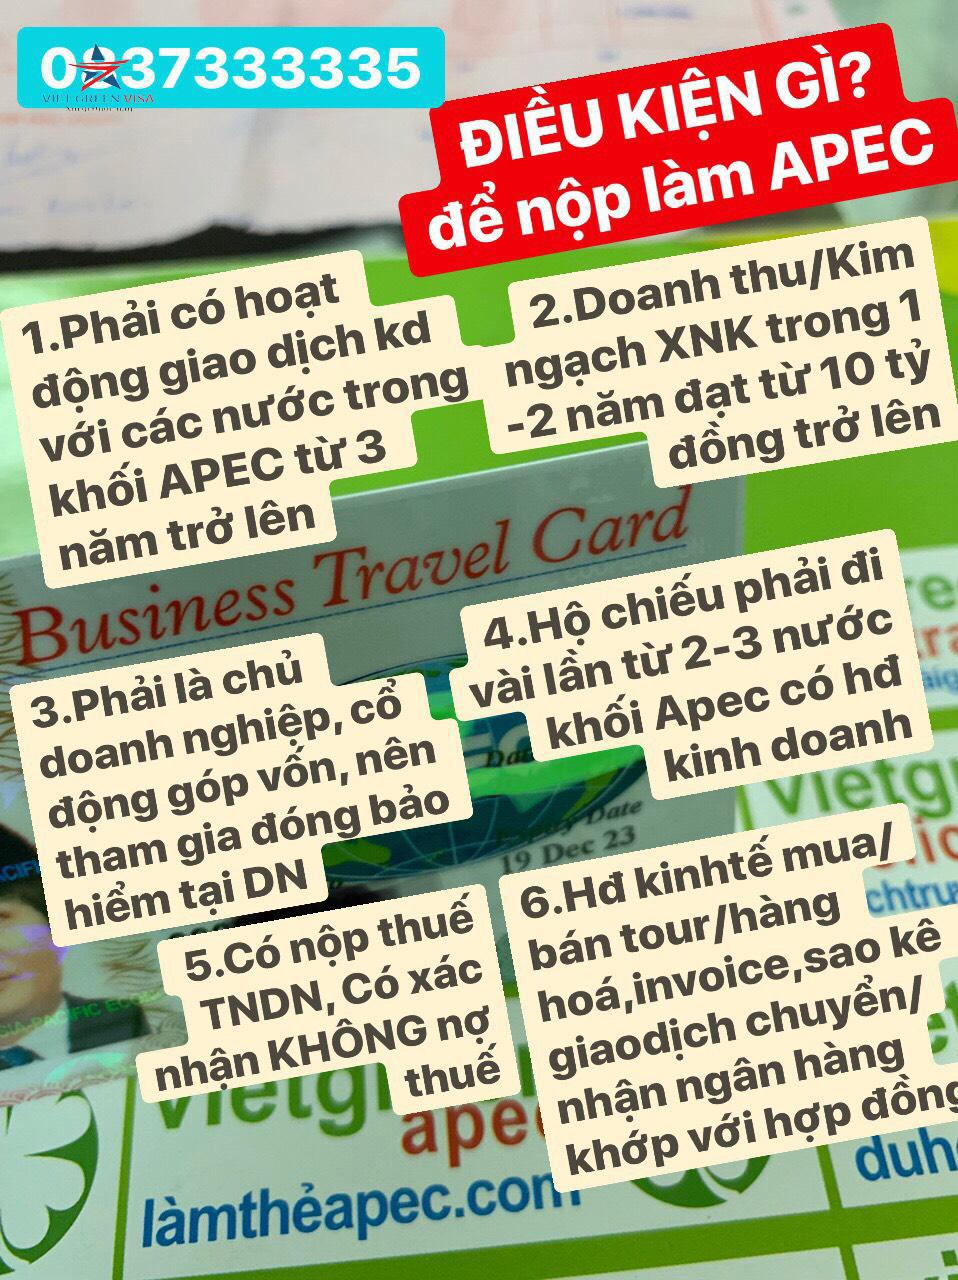 Gia hạn thẻ Apec tại Hồ Chí Minh, gia hạn thẻ Apec, thẻ Apec, Hồ Chí Minh, Viet Green Visa